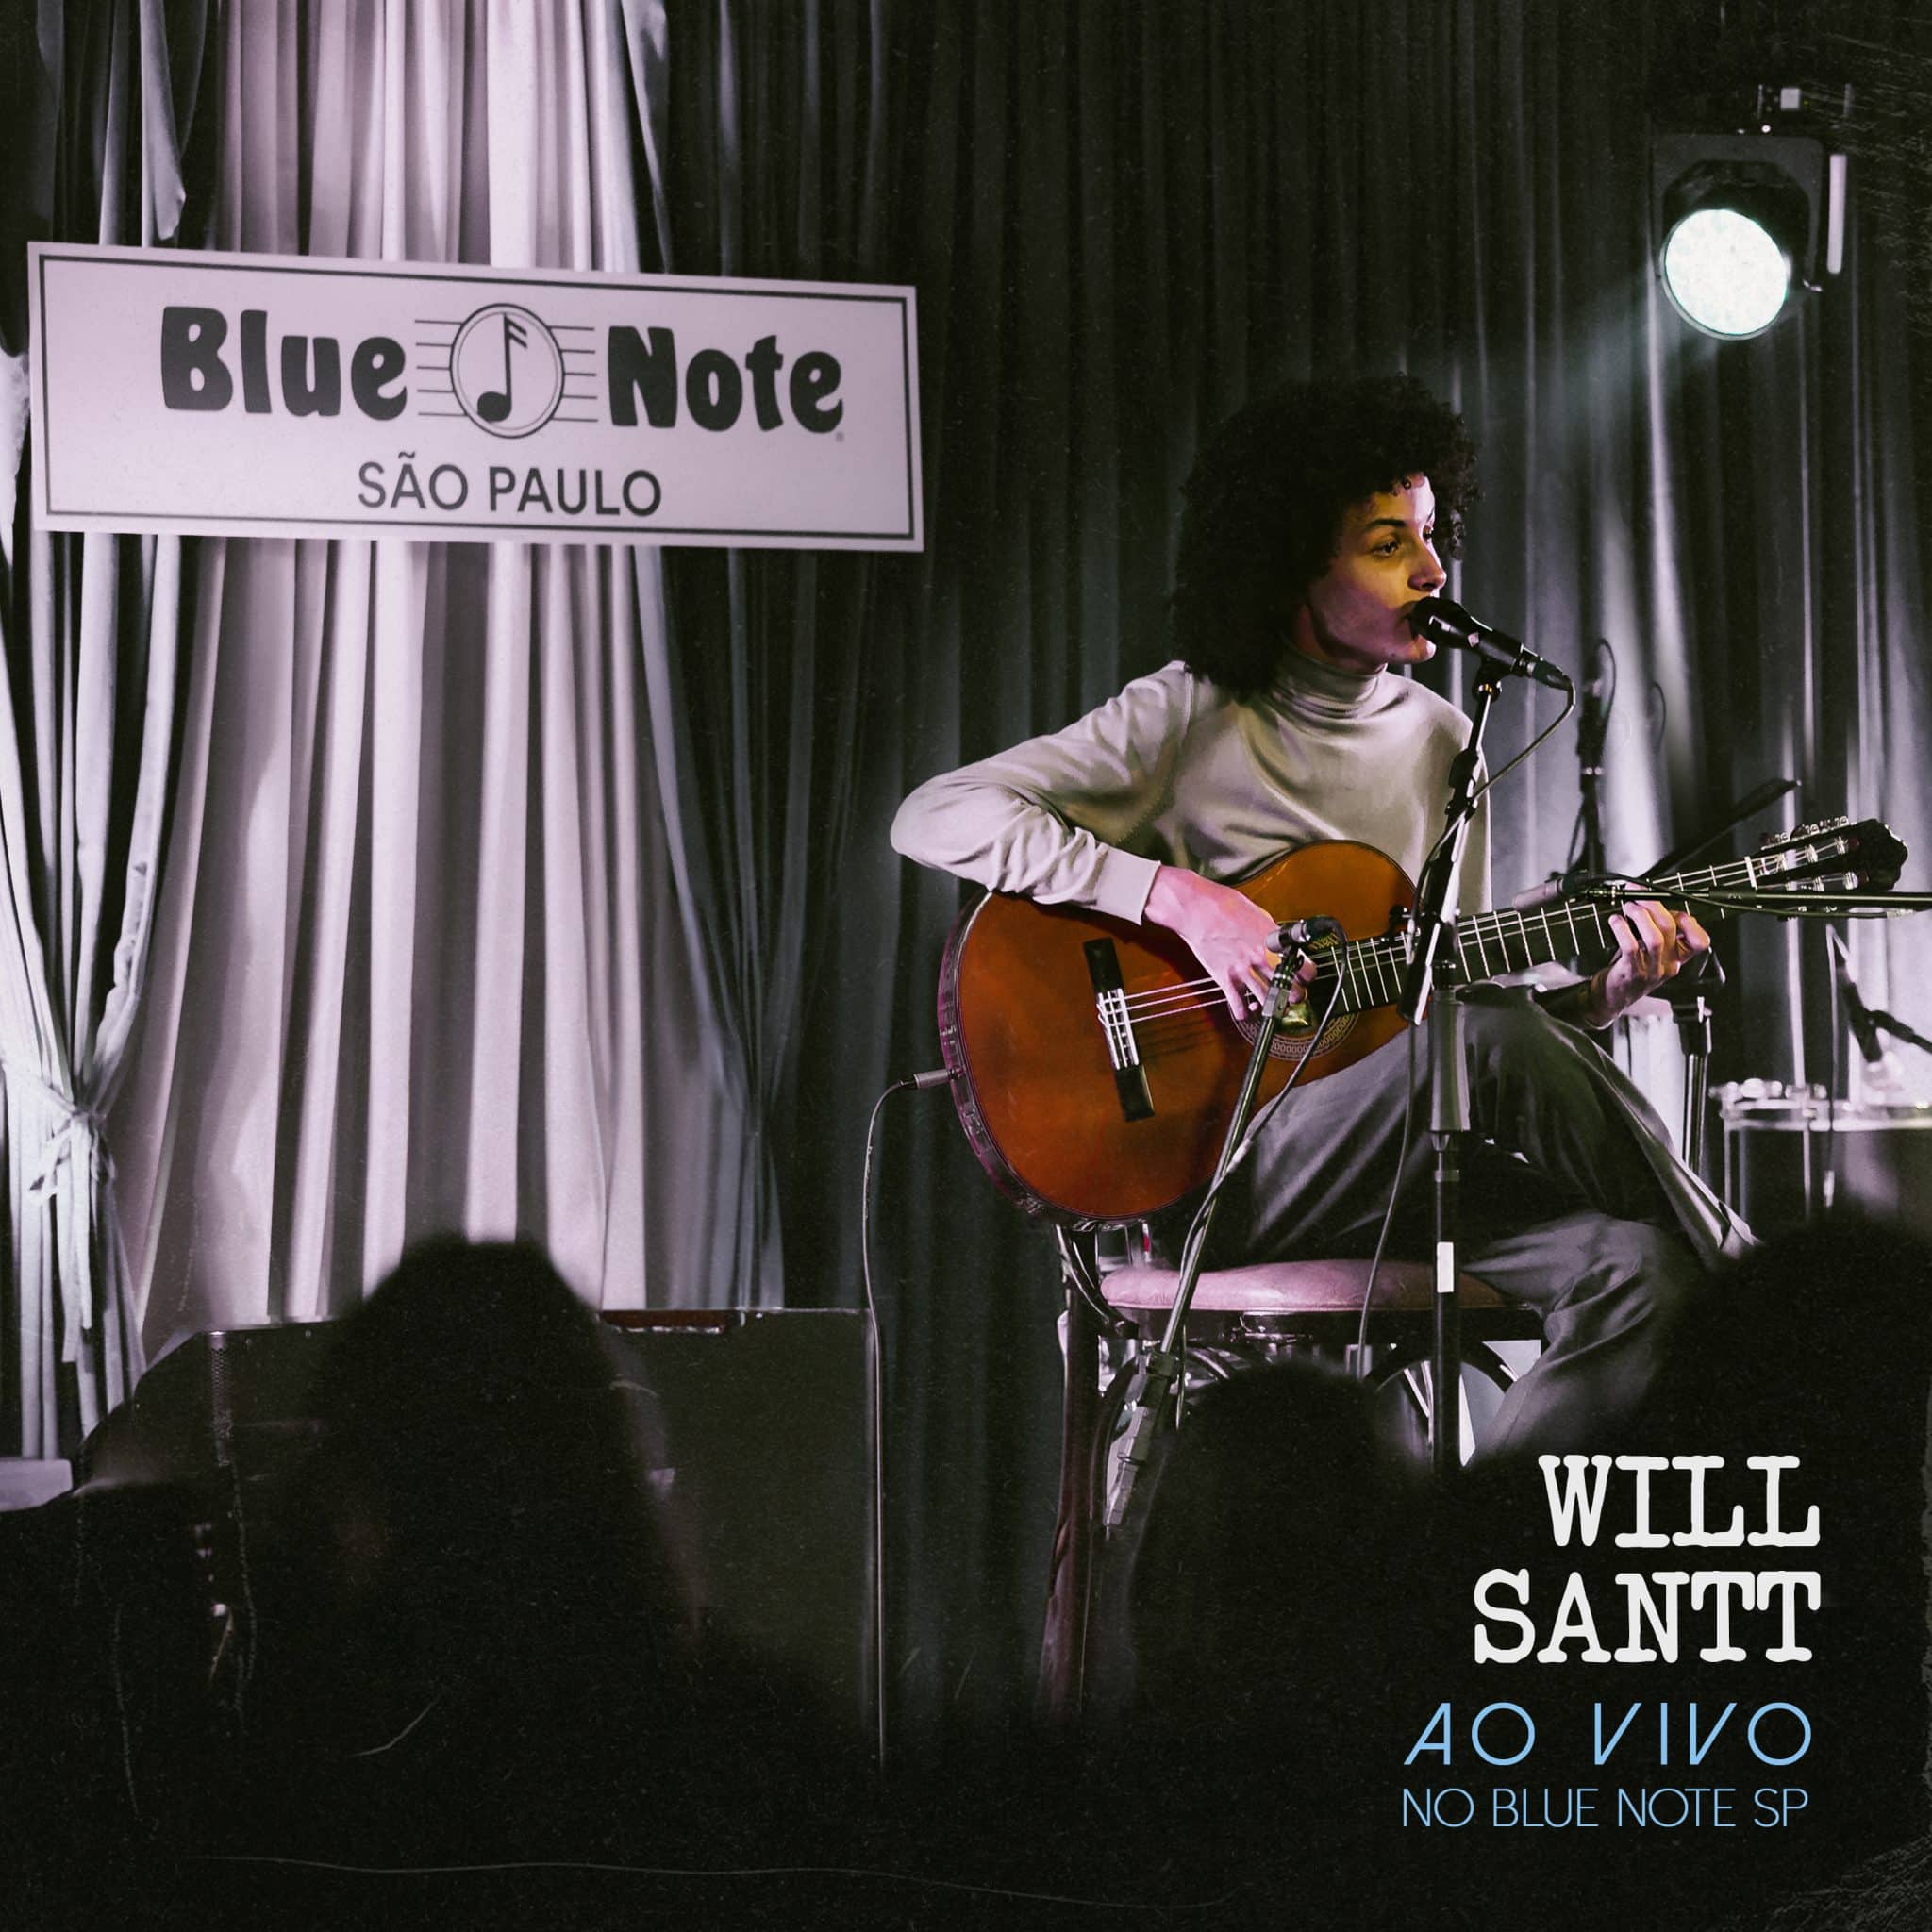 revistaprosaversoearte.com - Will Santt lança álbum 'Meu Caminho ao Vivo', gravado no Blue Note SP